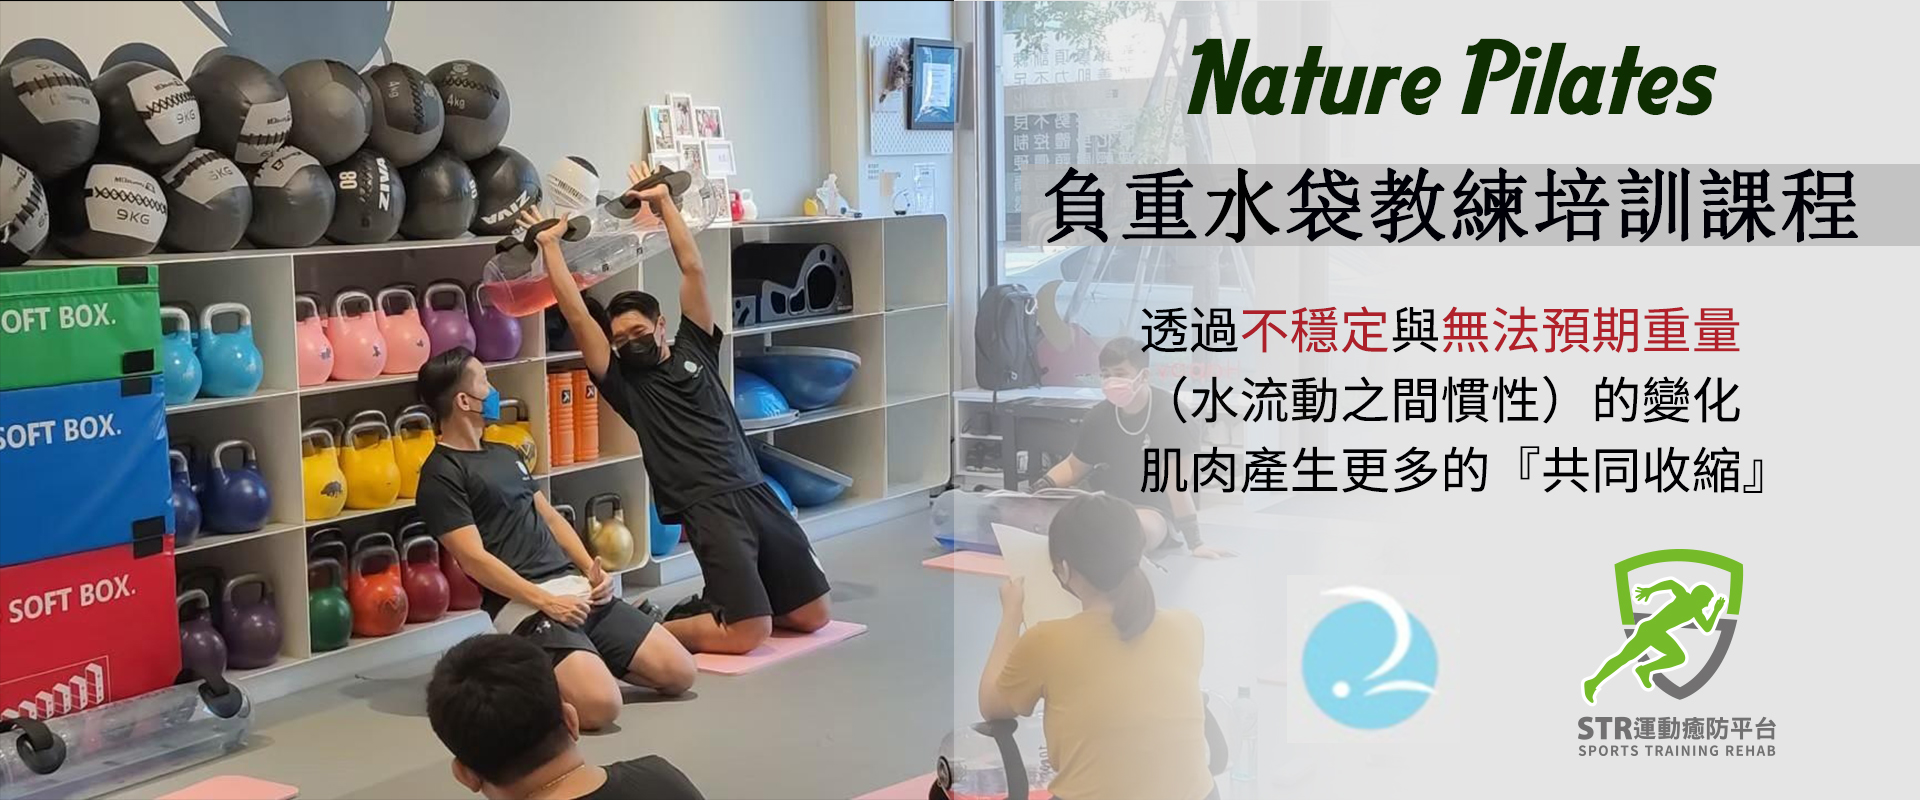 【2022】【Nature Pilates負重水袋教練培訓課程】4/30(高雄)